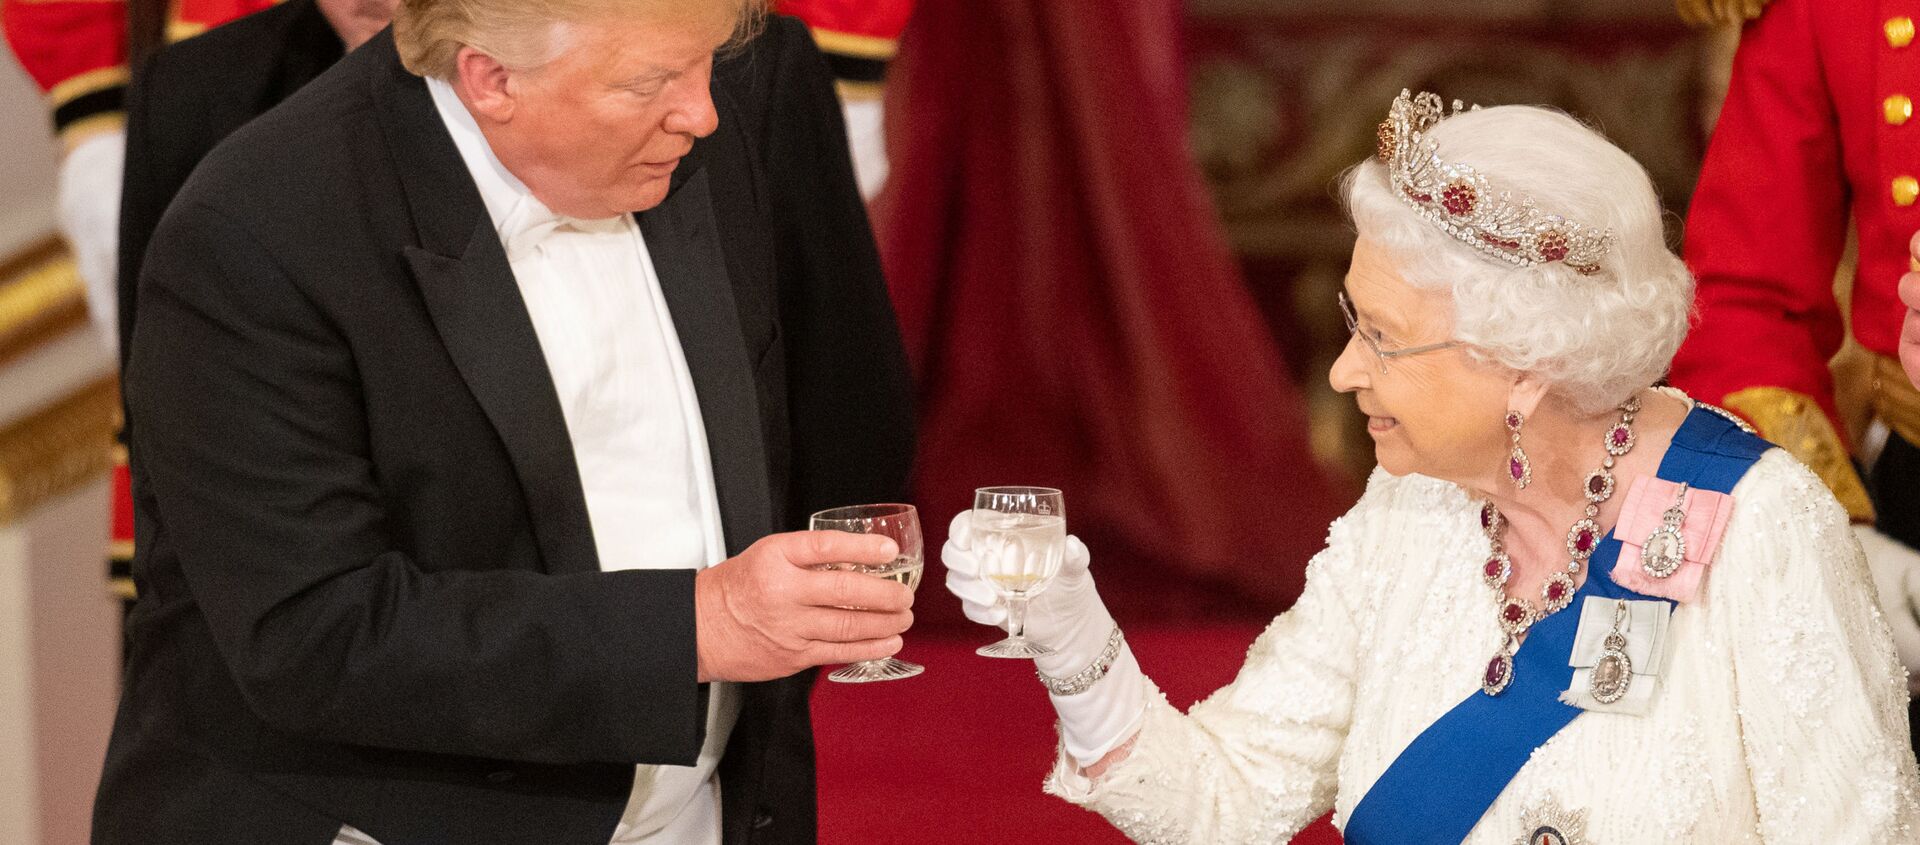 La reina Isabel II y el presidente de EEUU, Donald Trump, durante la visita del mandatario al Reino Unido - Sputnik Mundo, 1920, 04.06.2019